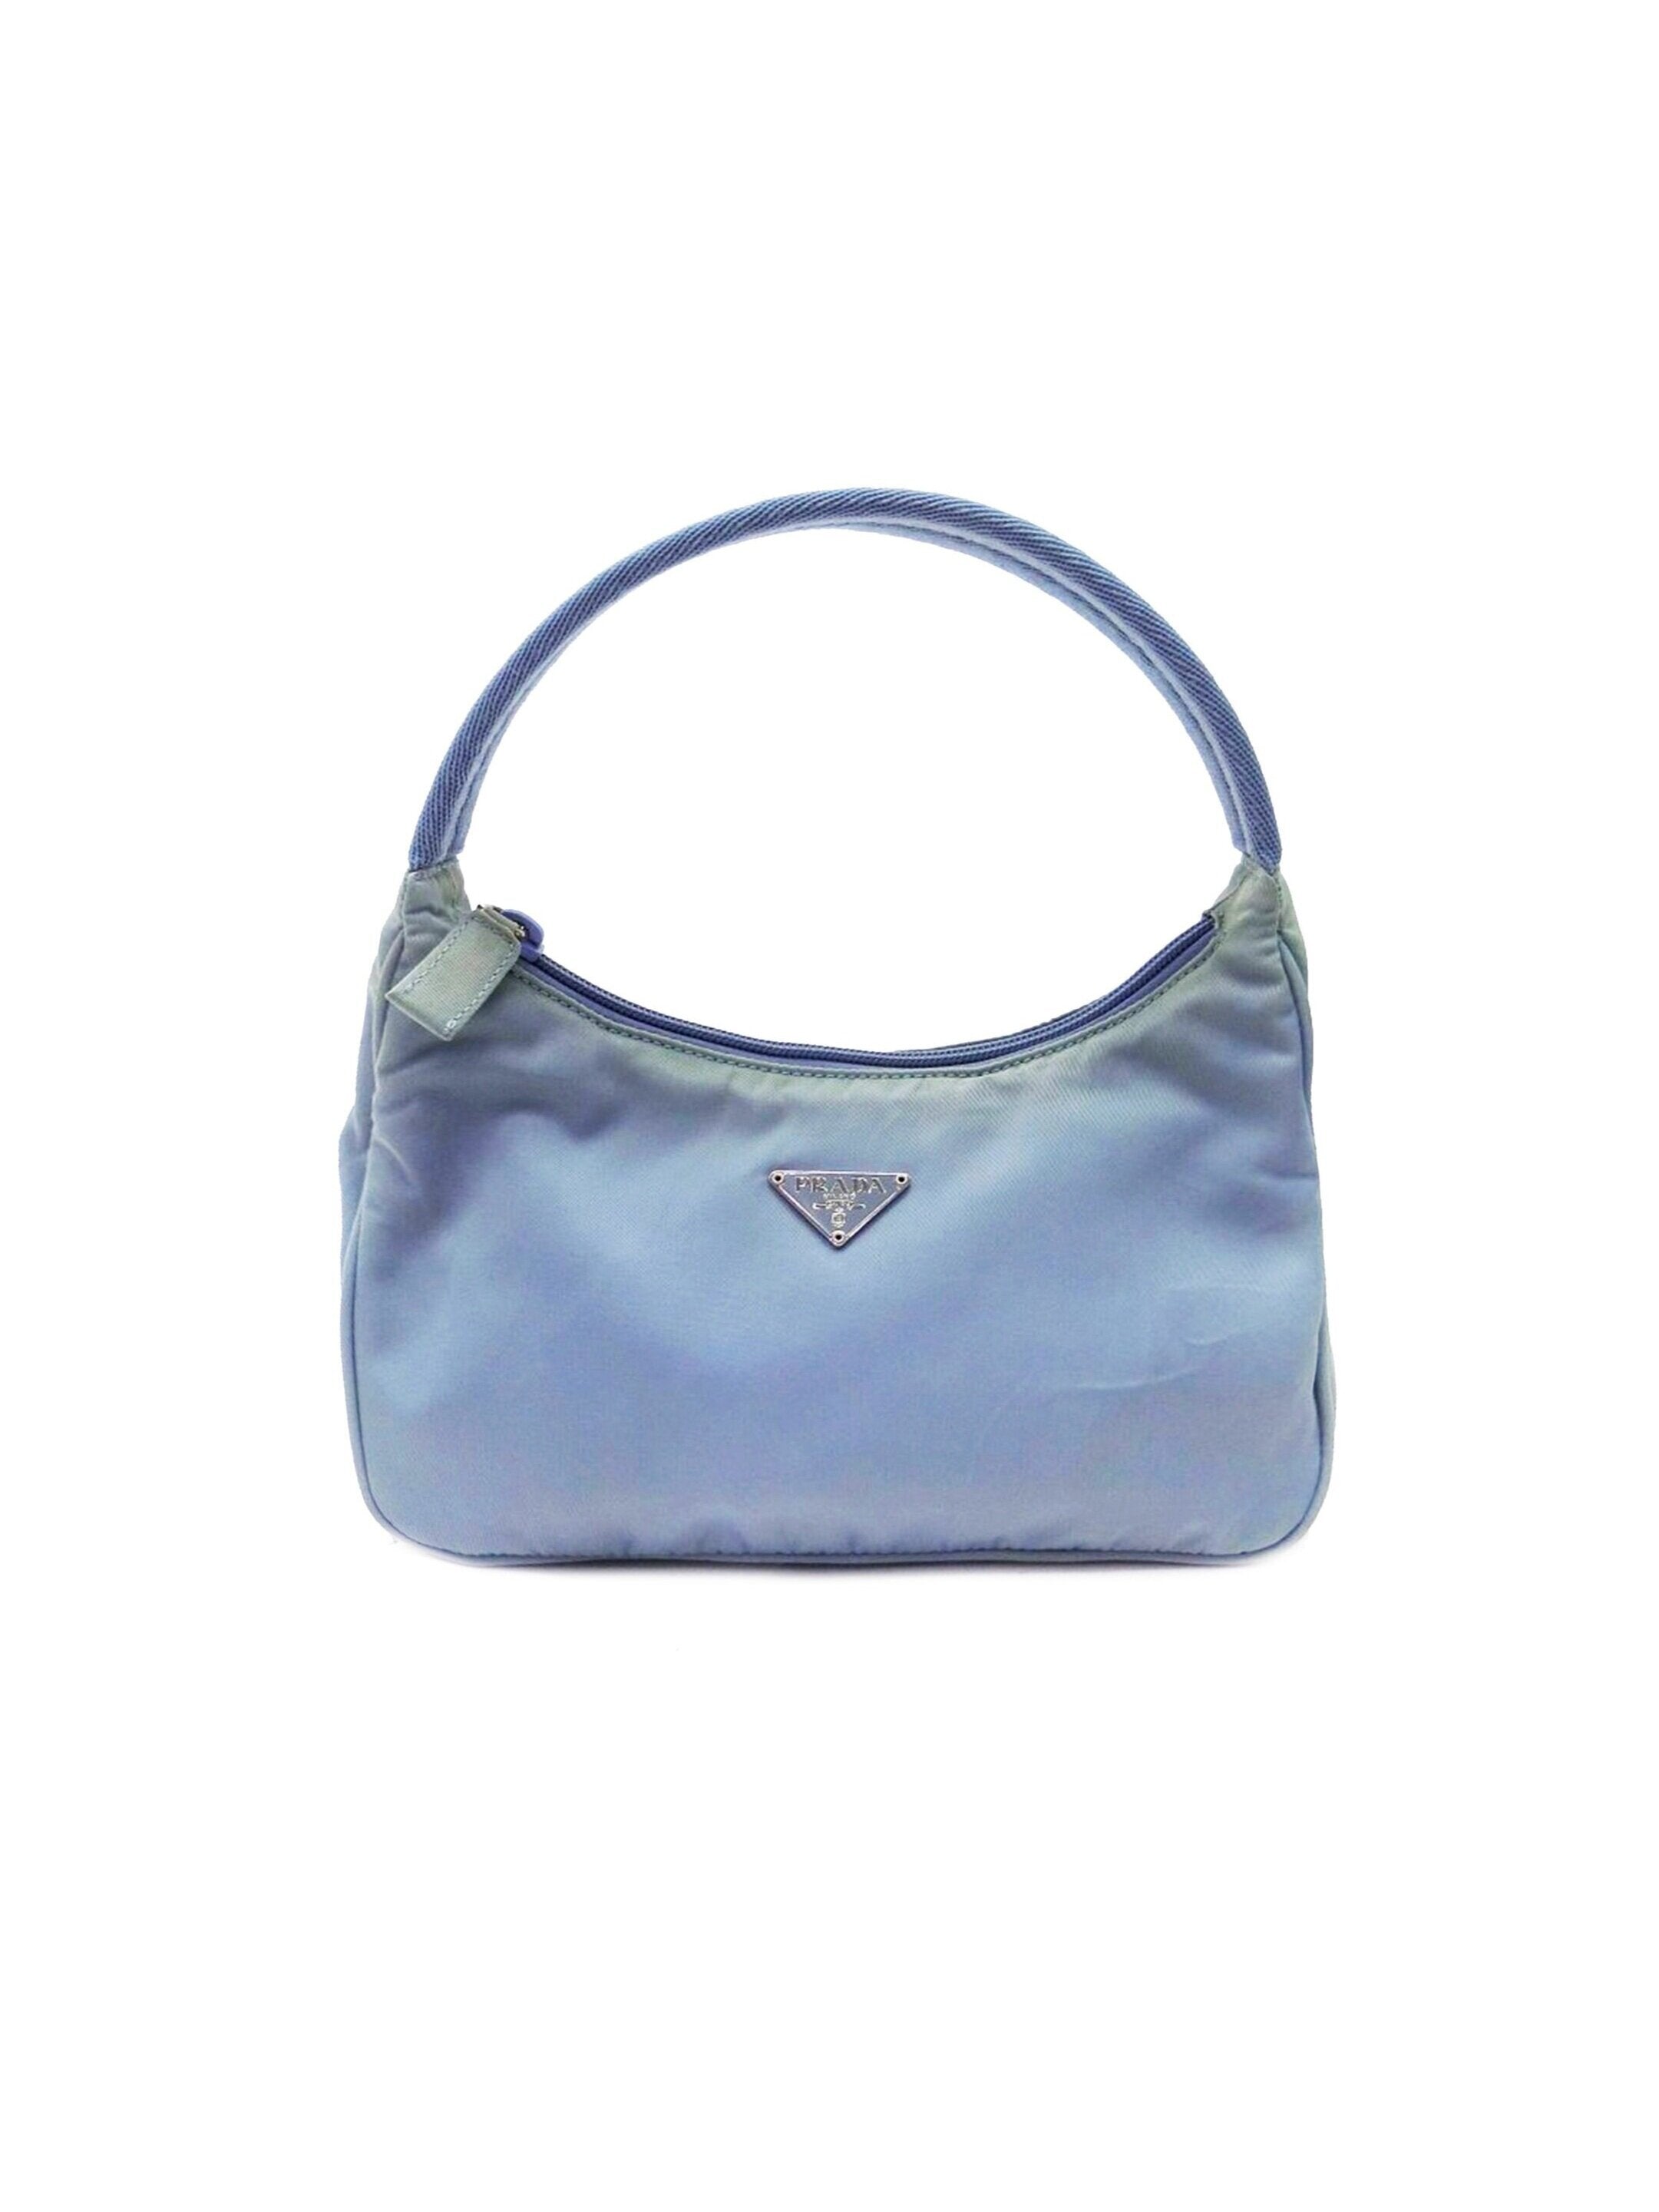 Prada 2000s Light Blue Tessuto Handbag